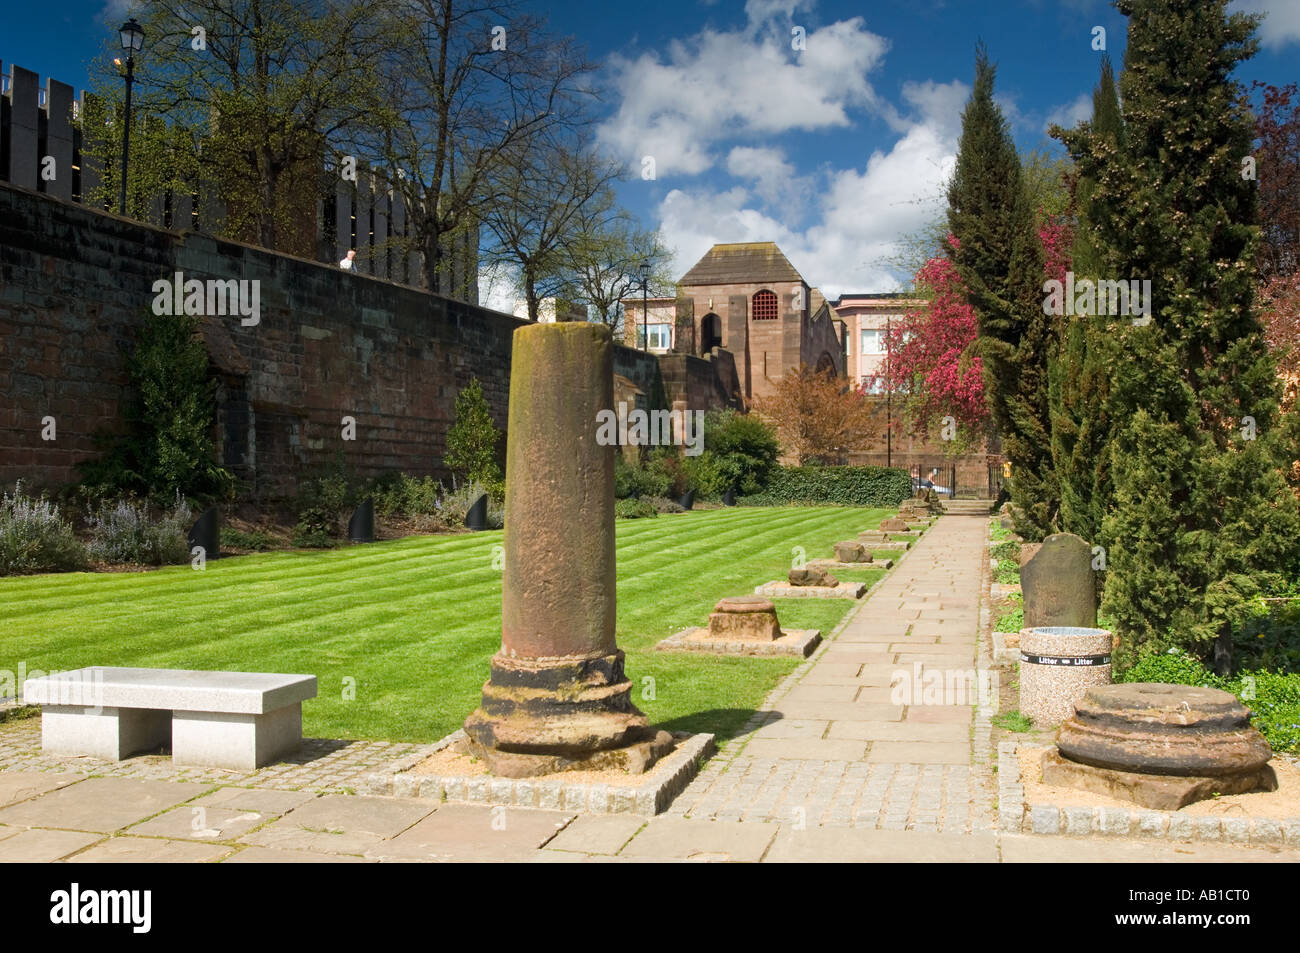 Les jardins et les remparts de la ville romaine au printemps, Chester, Cheshire, Angleterre, RU Banque D'Images